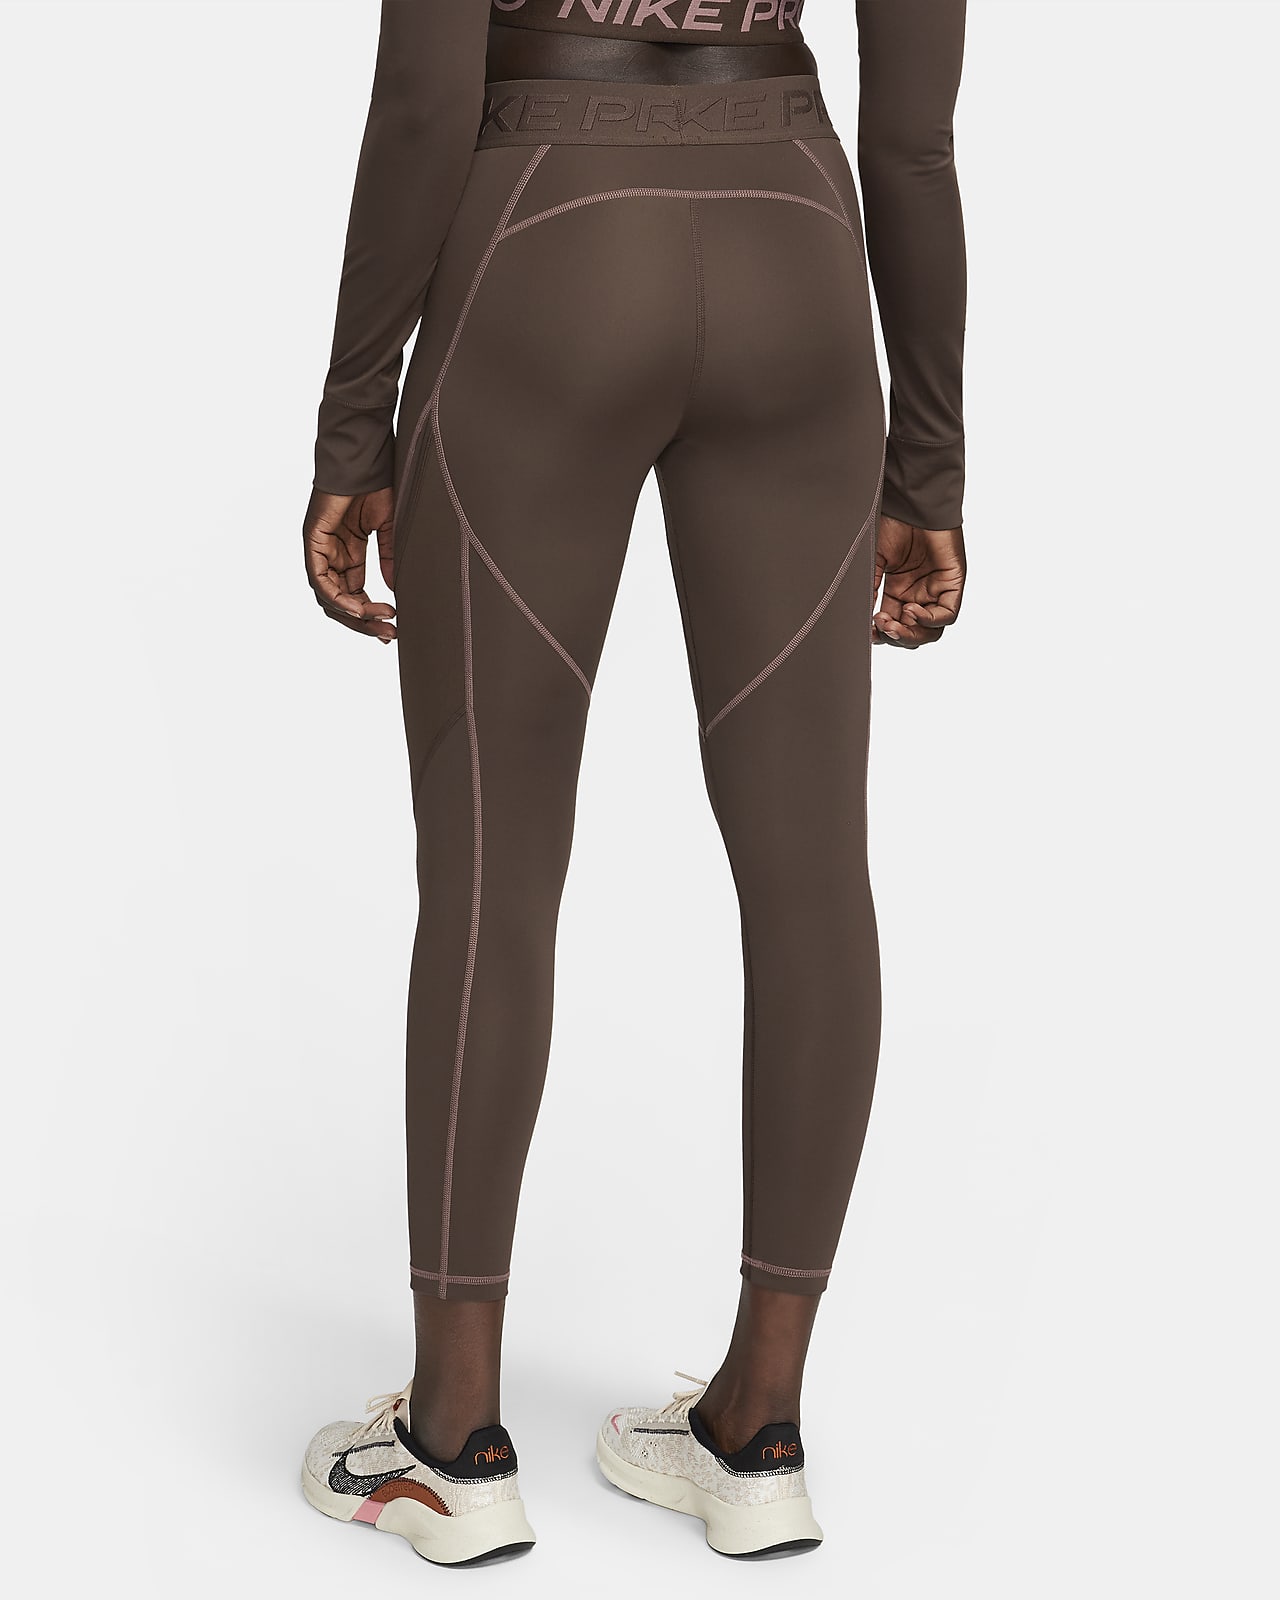 Legging 7/8 taille mi-haute à motif Nike Pro pour femme. Nike FR